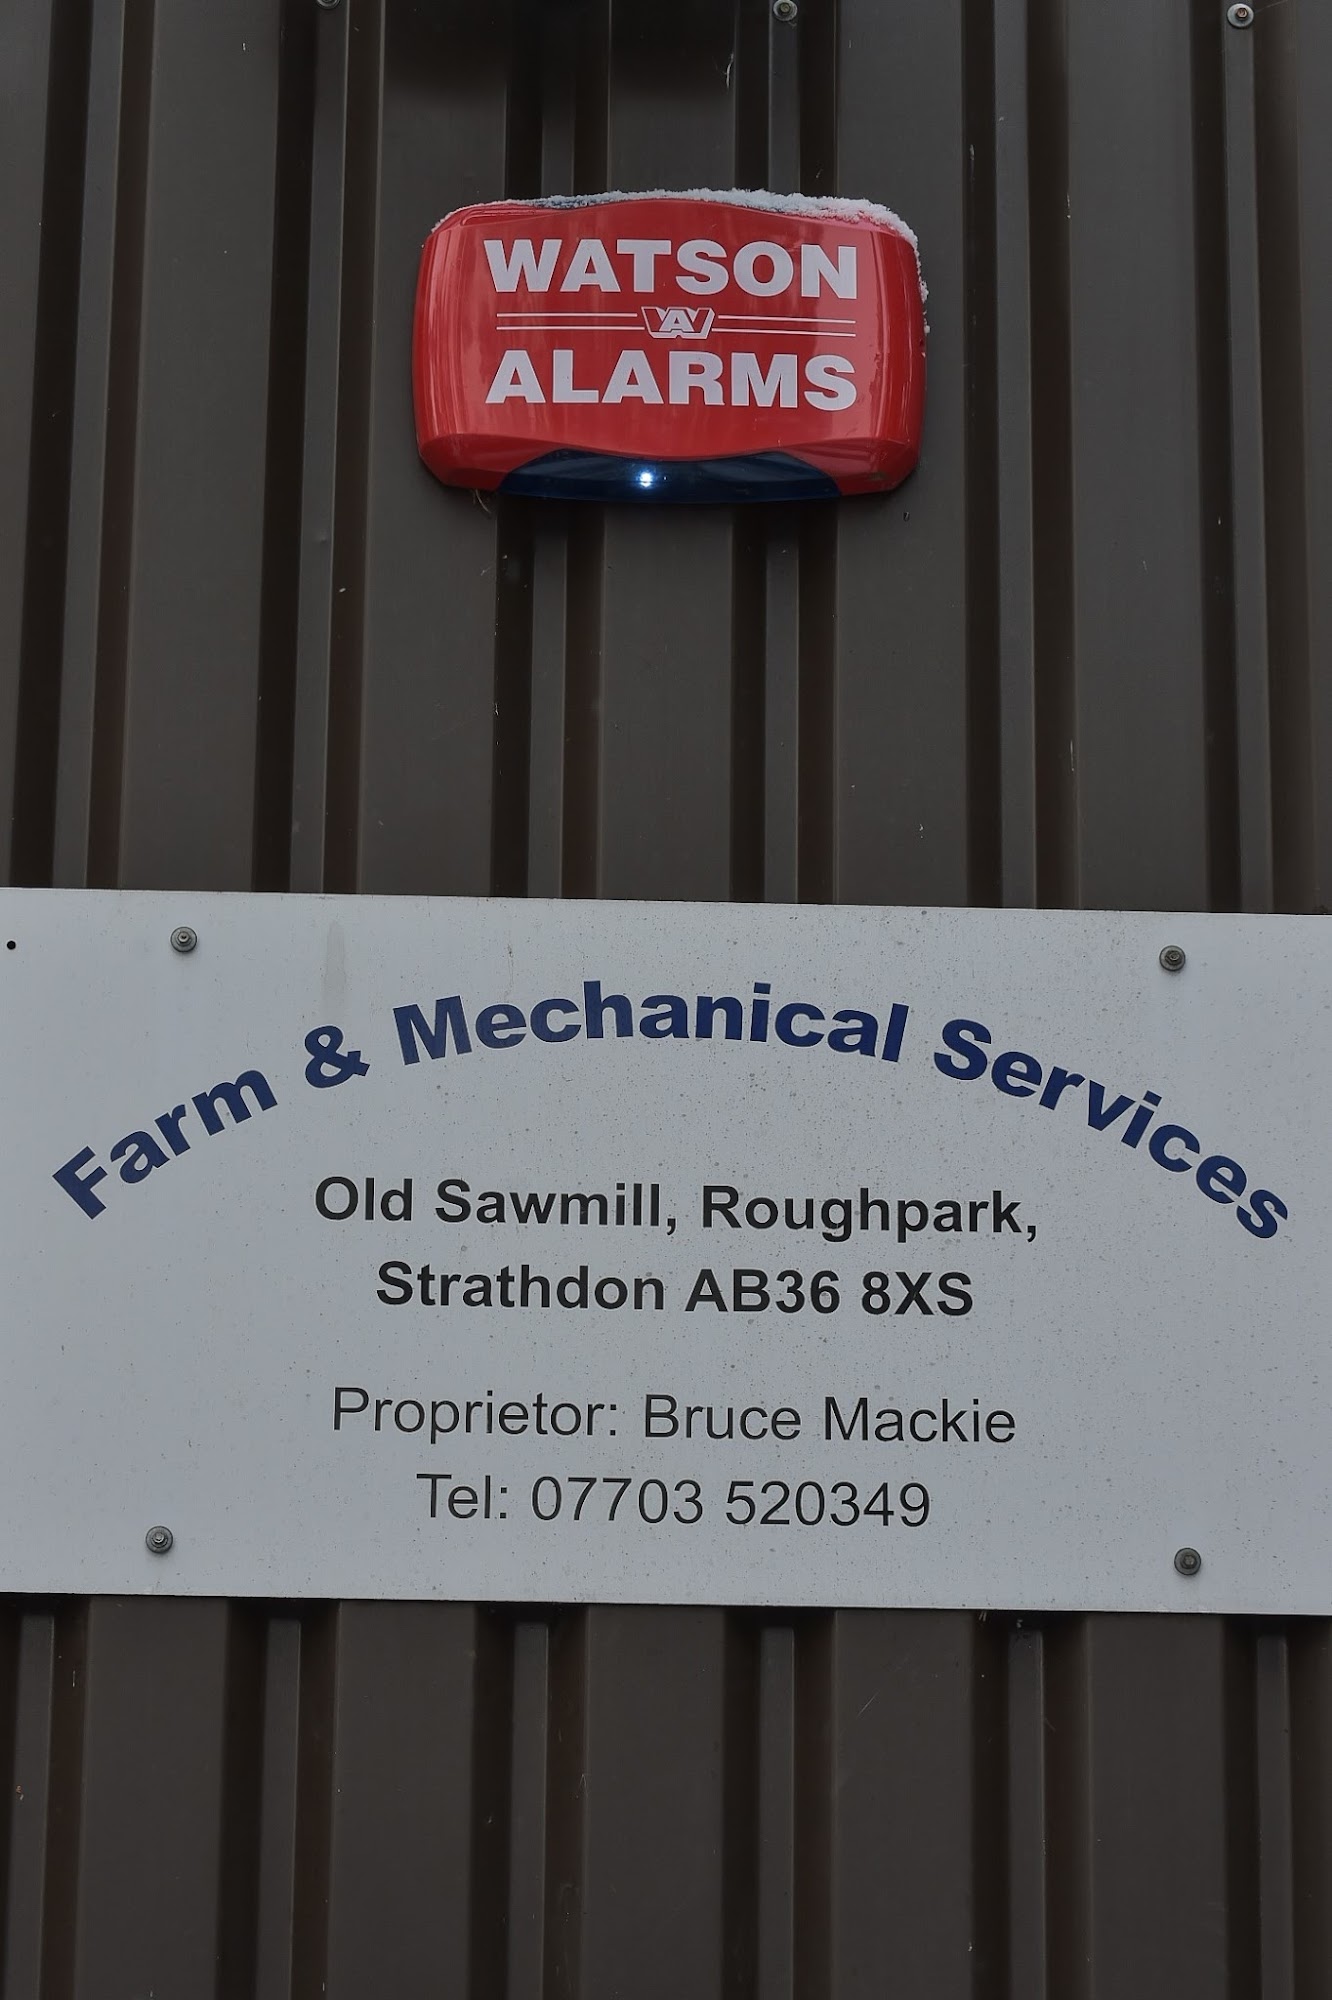 Farm & Mechanical Services